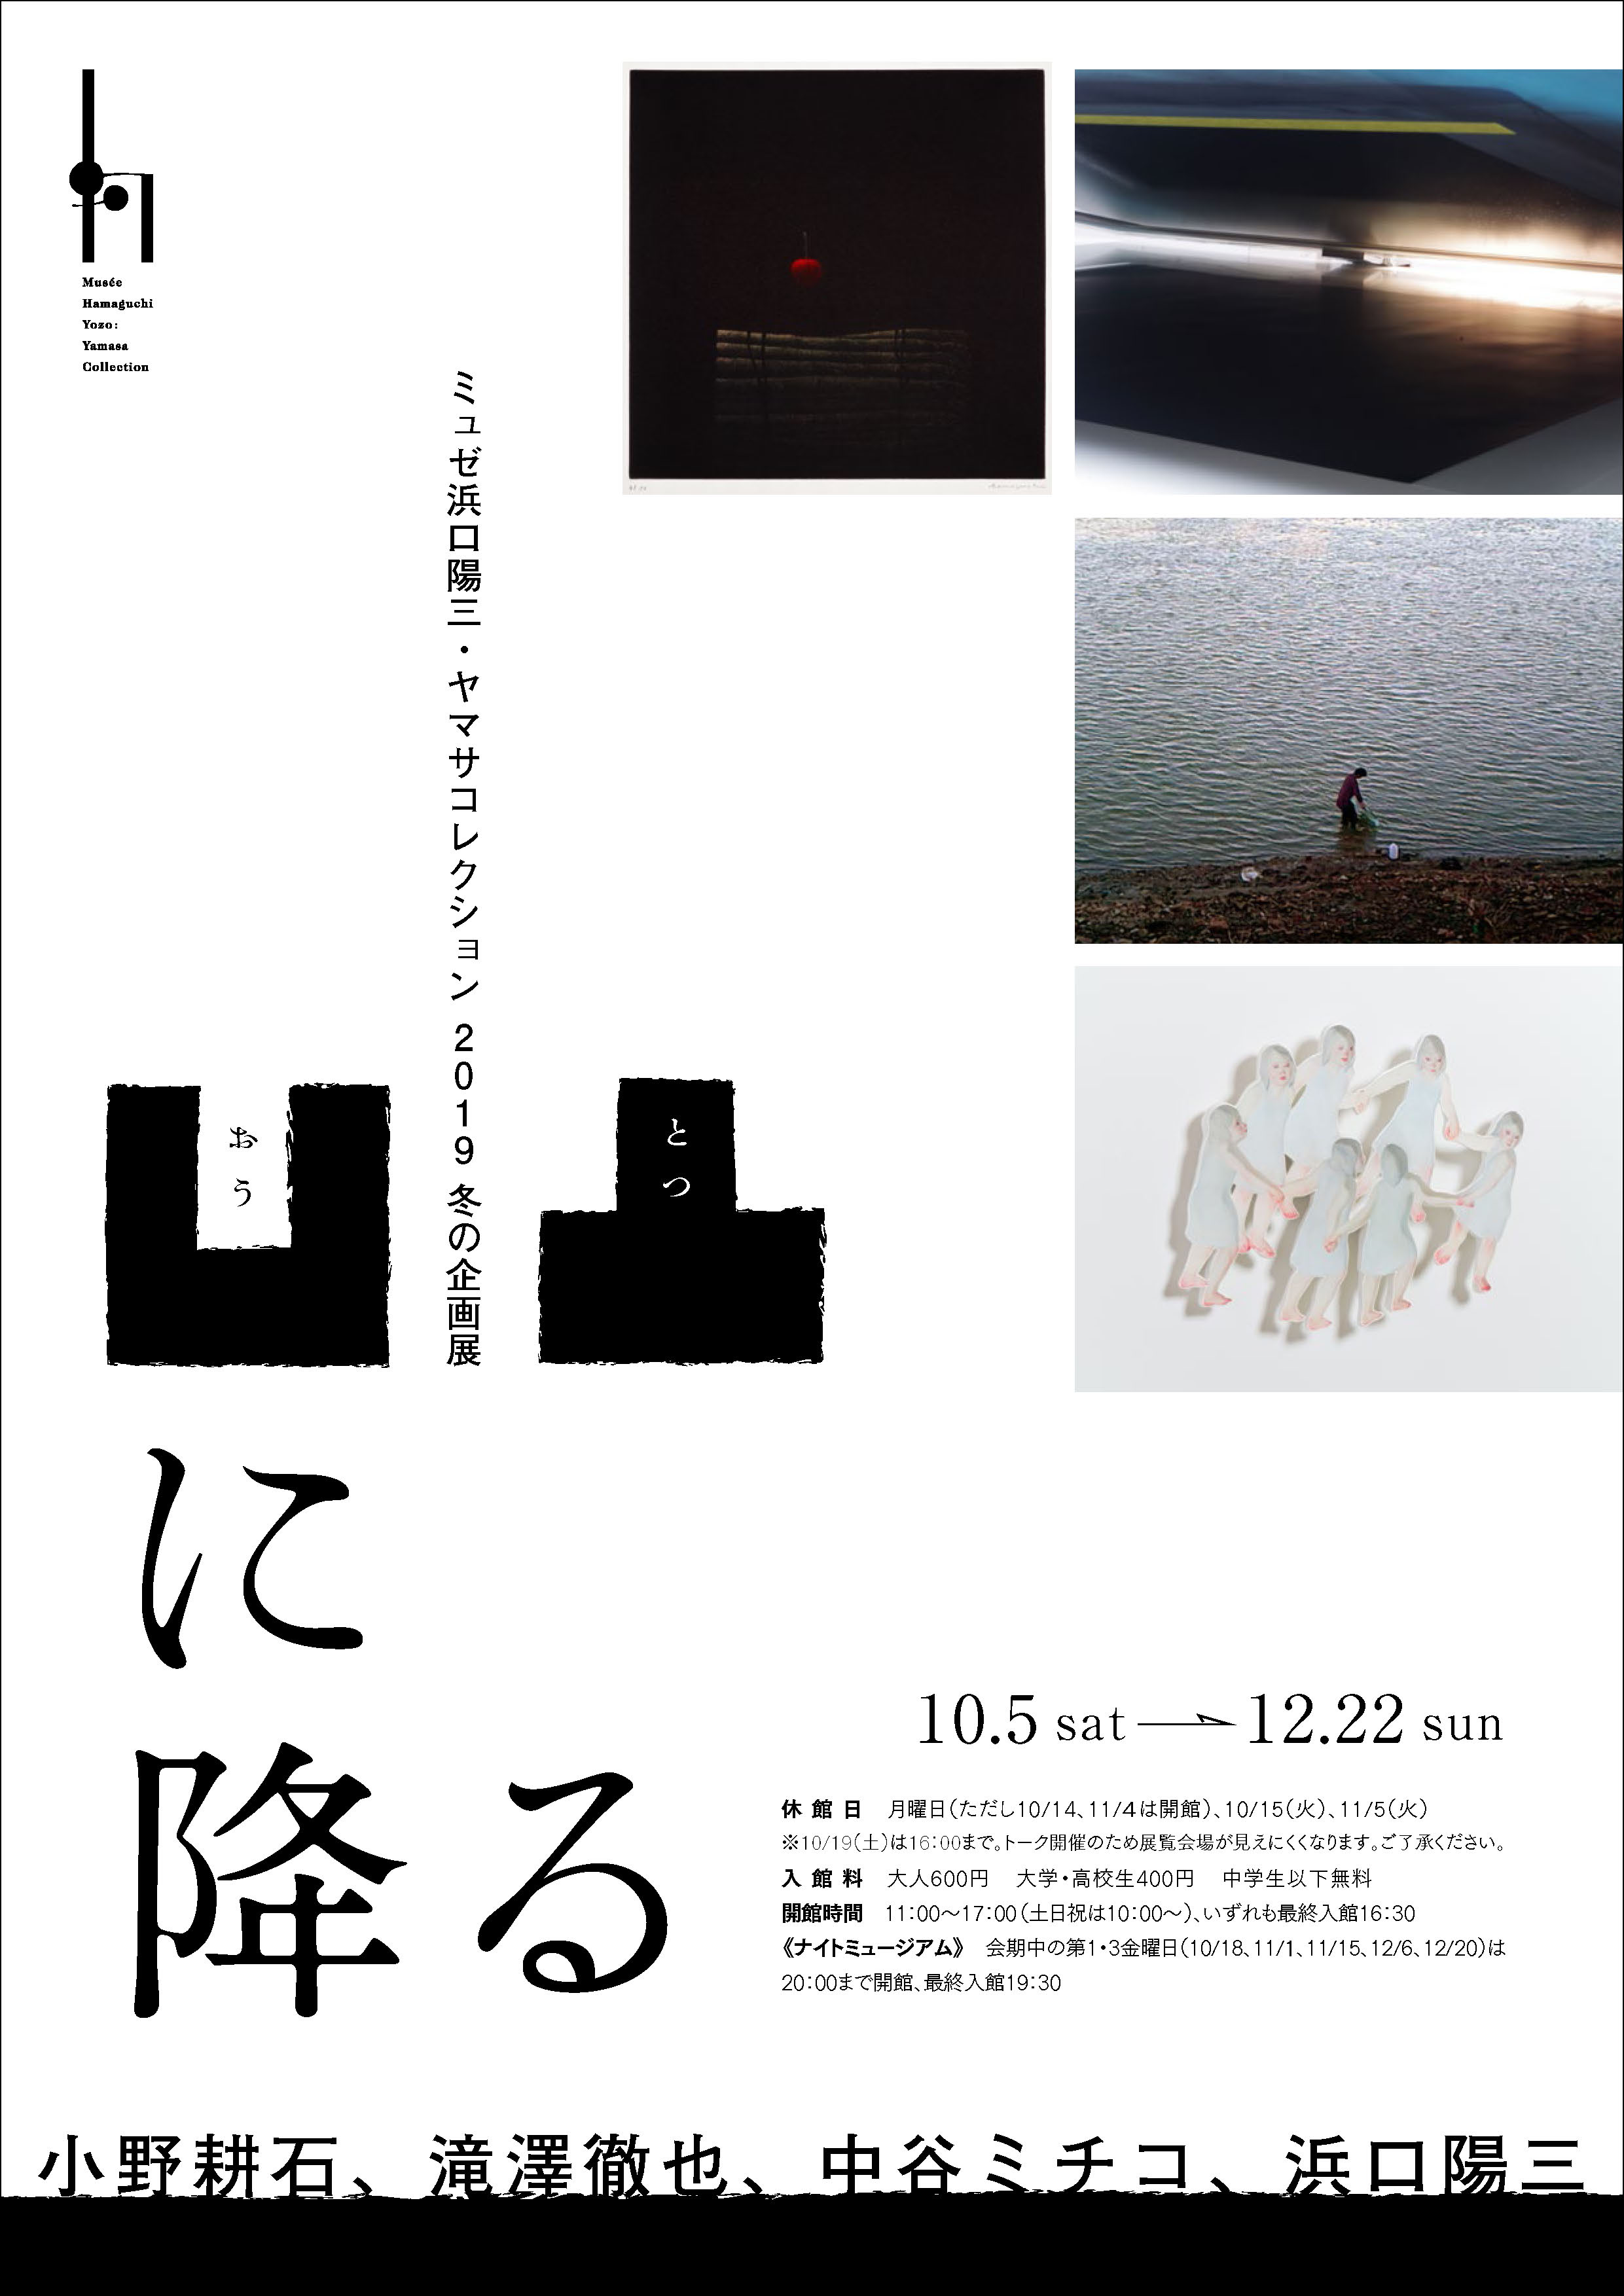 凹凸に降る -ミュゼ浜口陽三・ヤマサコレクション 2019年冬の企画展 